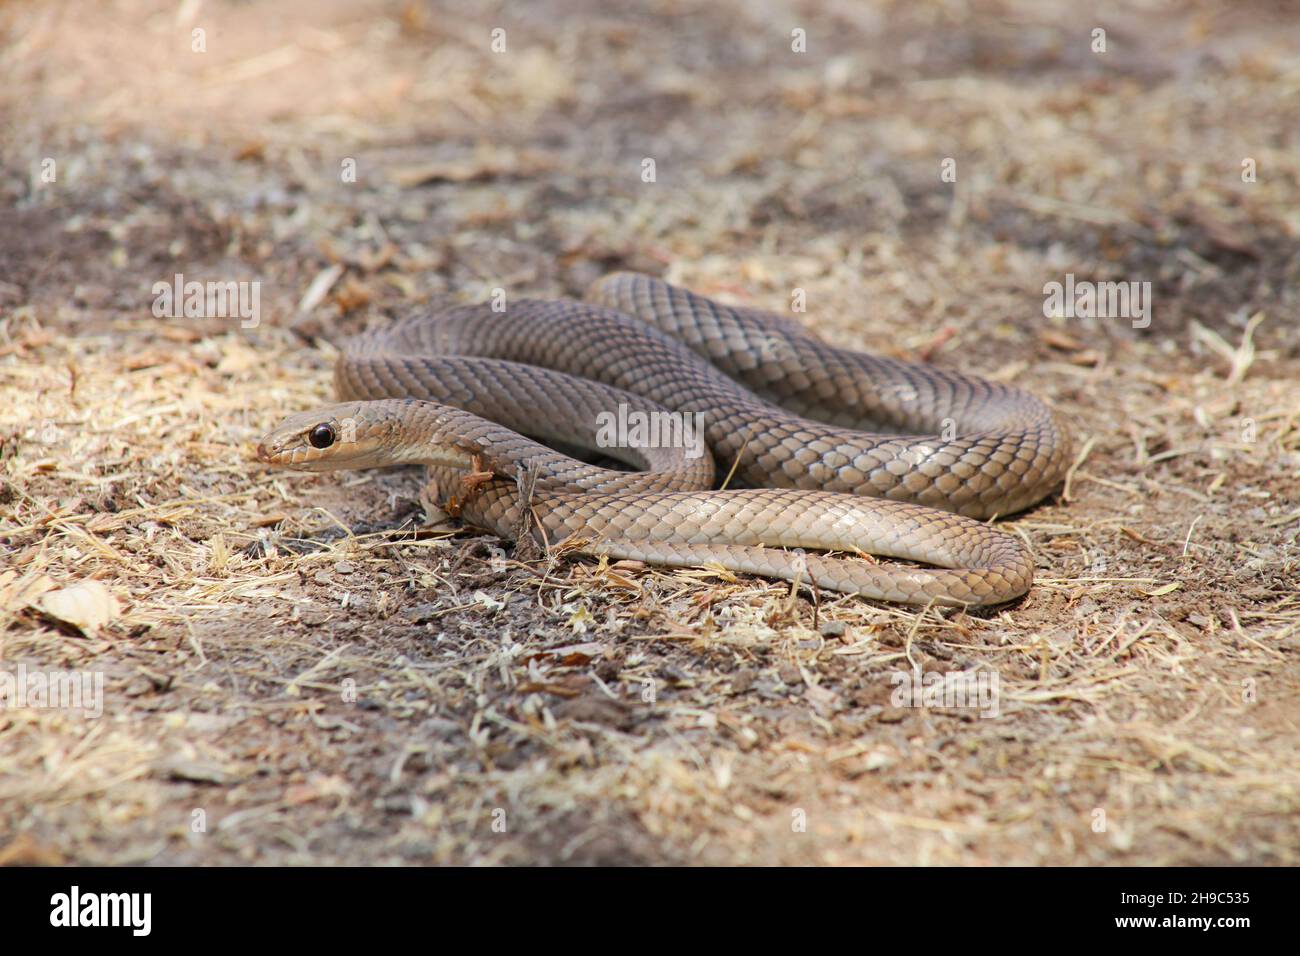 Psammophis longifrons, le serpent de sable piquant ou le long coureur de sable, Nashik, Maharashtra, Inde Banque D'Images